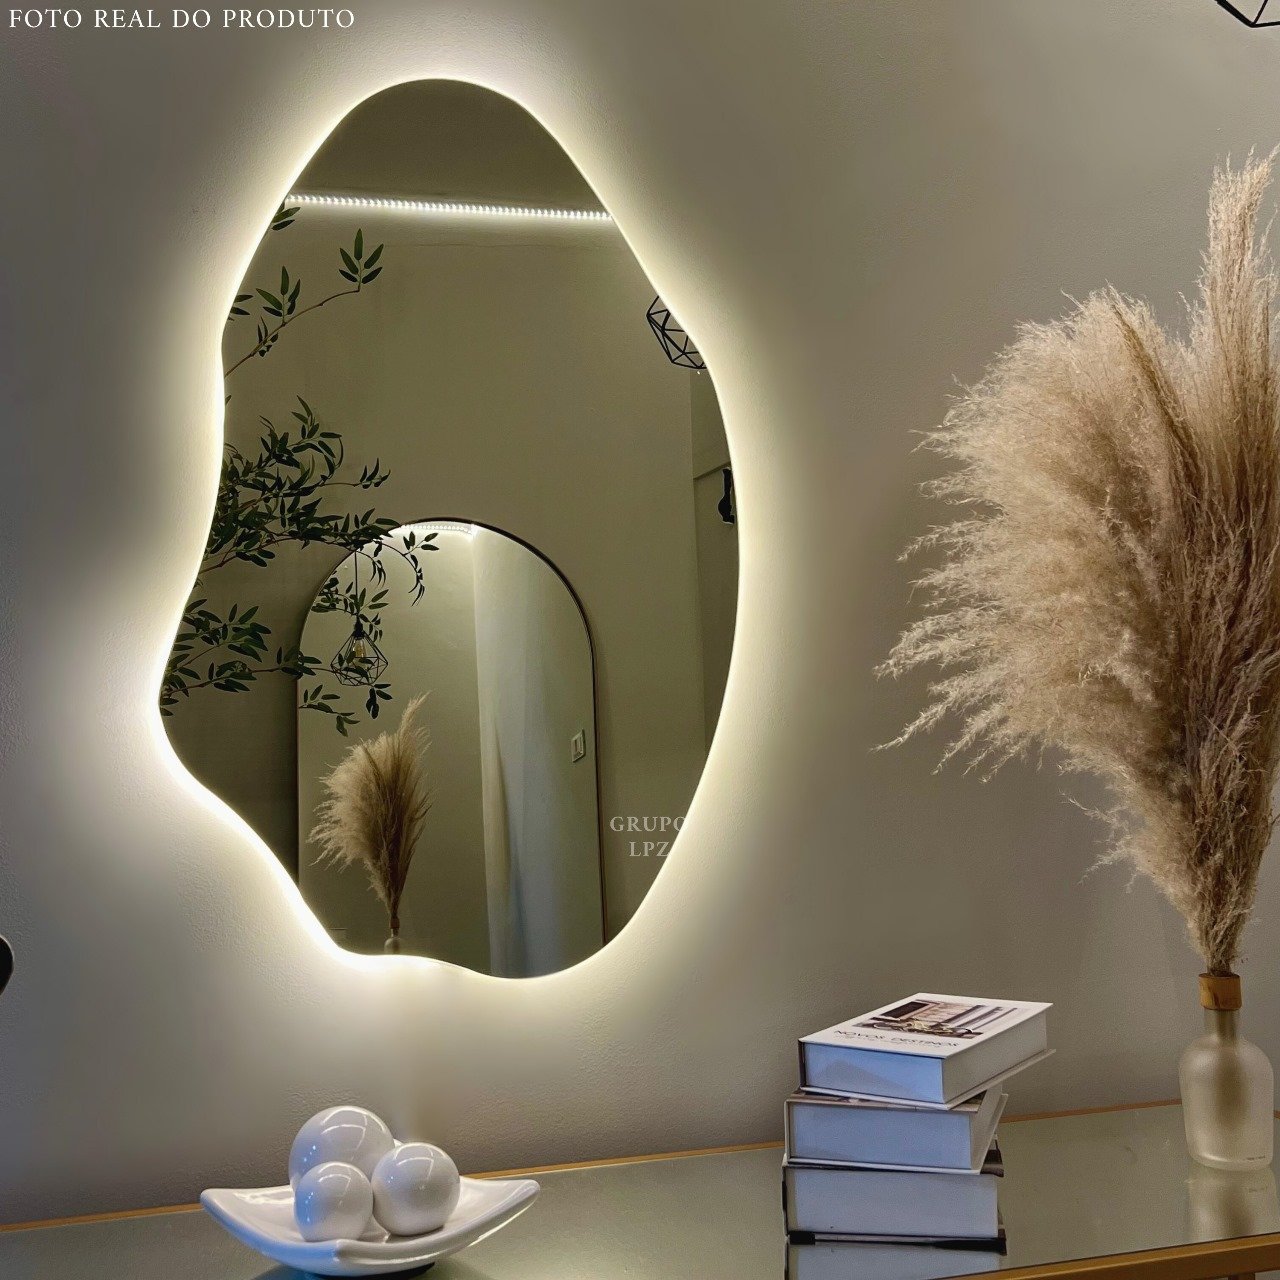 Espelho Grande Orgânico Lapidado Decorativo Sala Hall Parede 70x50 Cm Moderno com Led 3000k